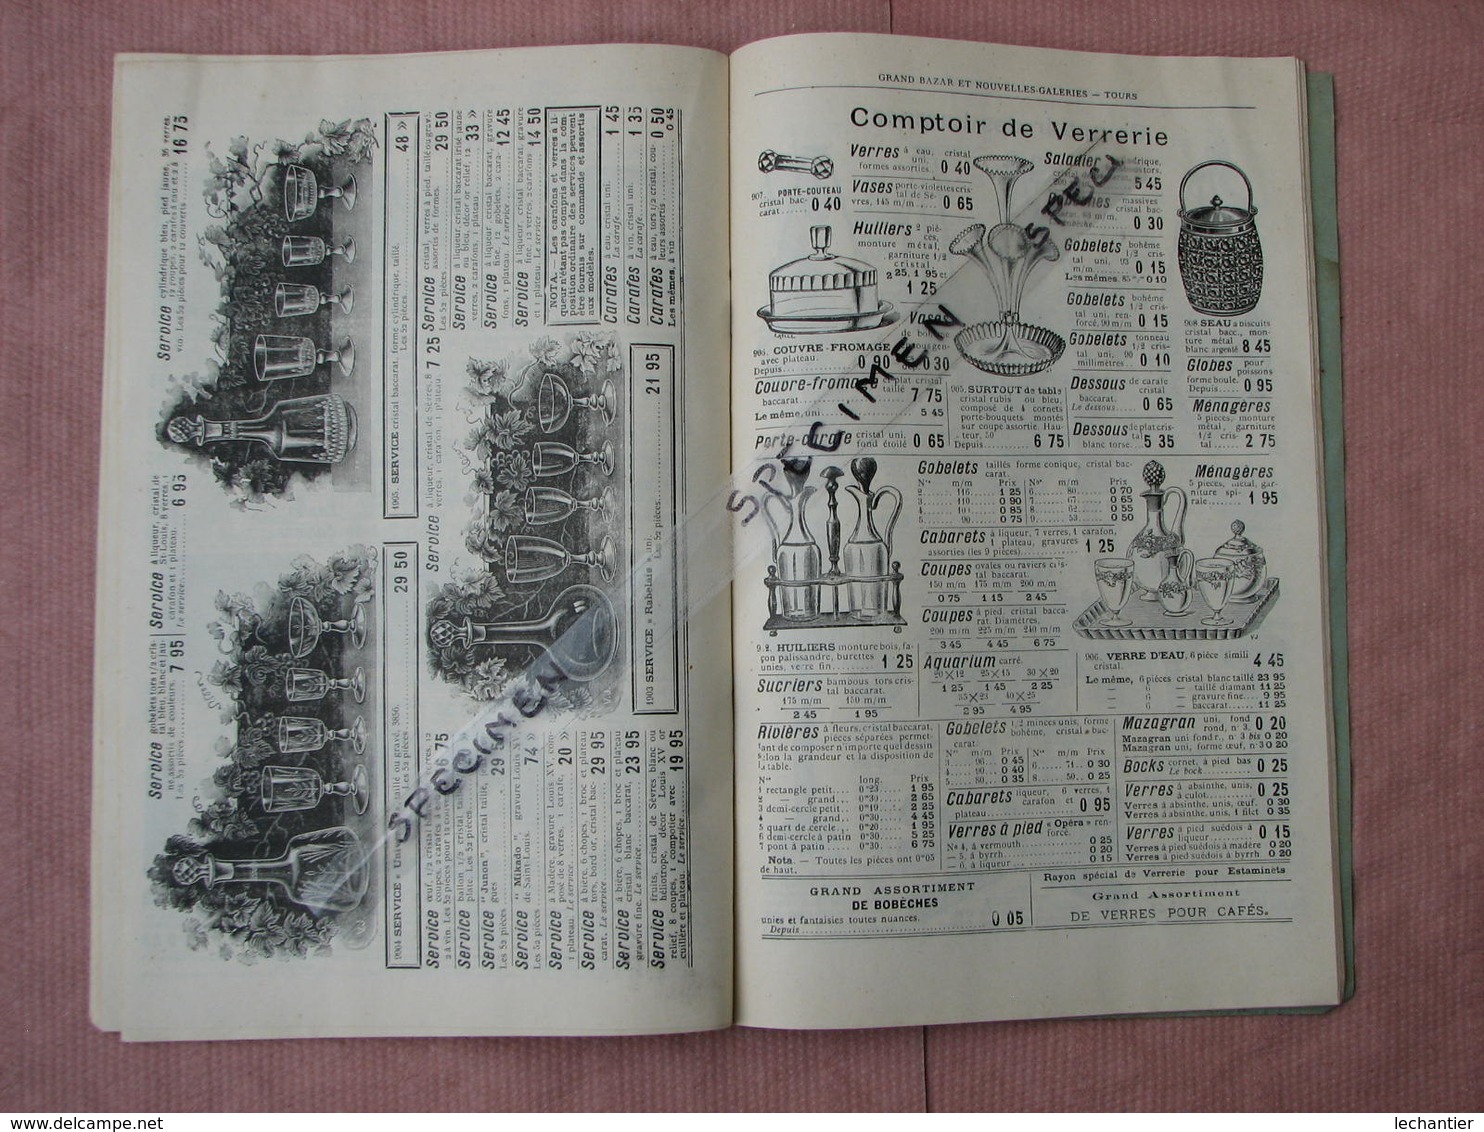 TOURS 1899 Nouvelles Galeries Catalogue Général 96 Pages 16X24 Très Interessant - Droguerie & Parfumerie